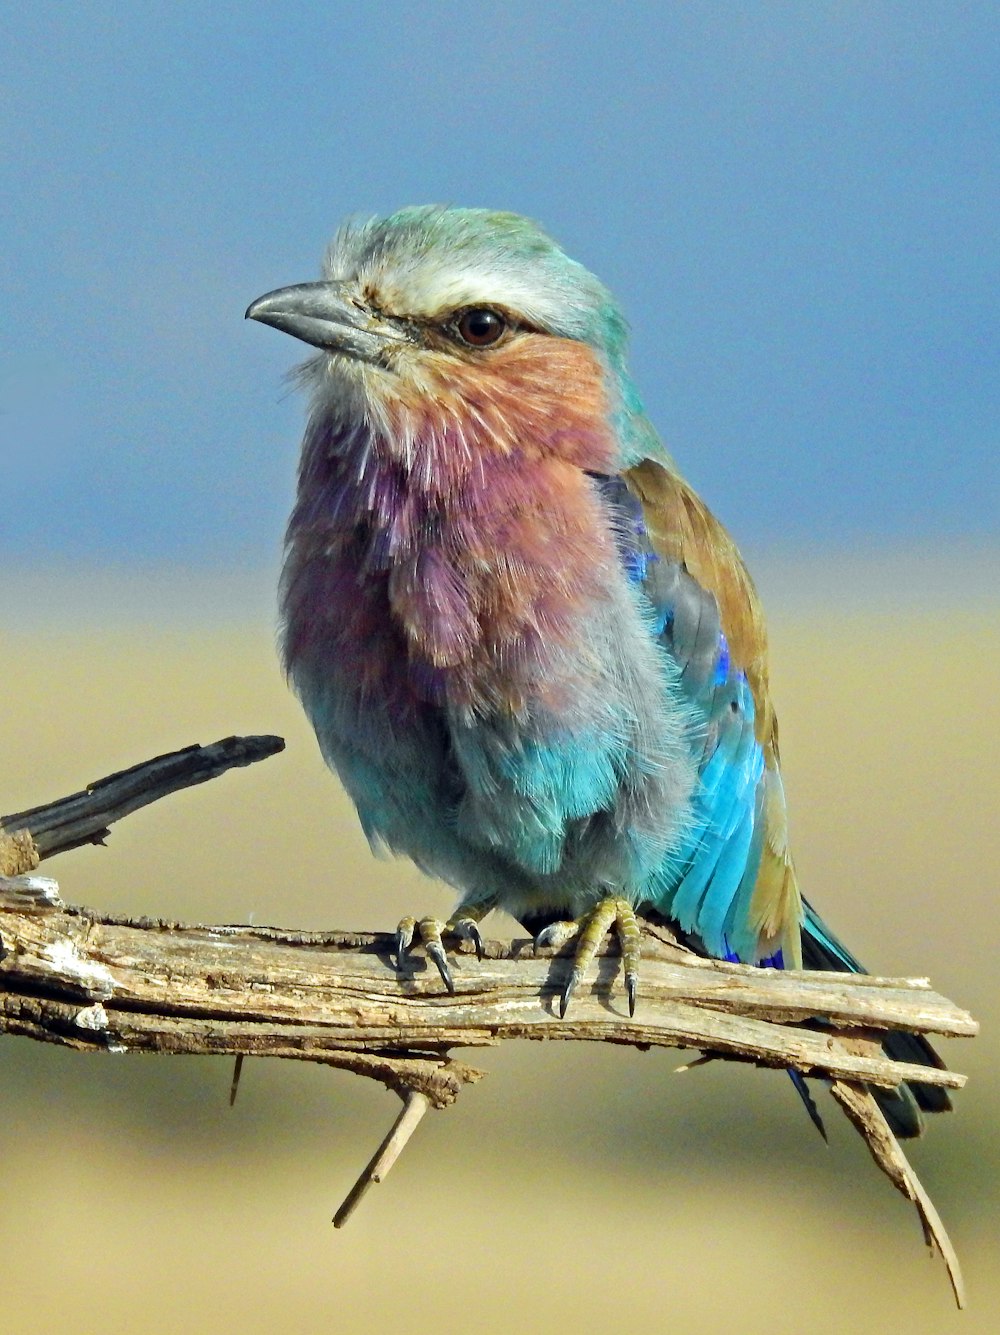 Más de 500 imágenes de pájaros coloridos [HD] | Descargar imágenes gratis  en Unsplash